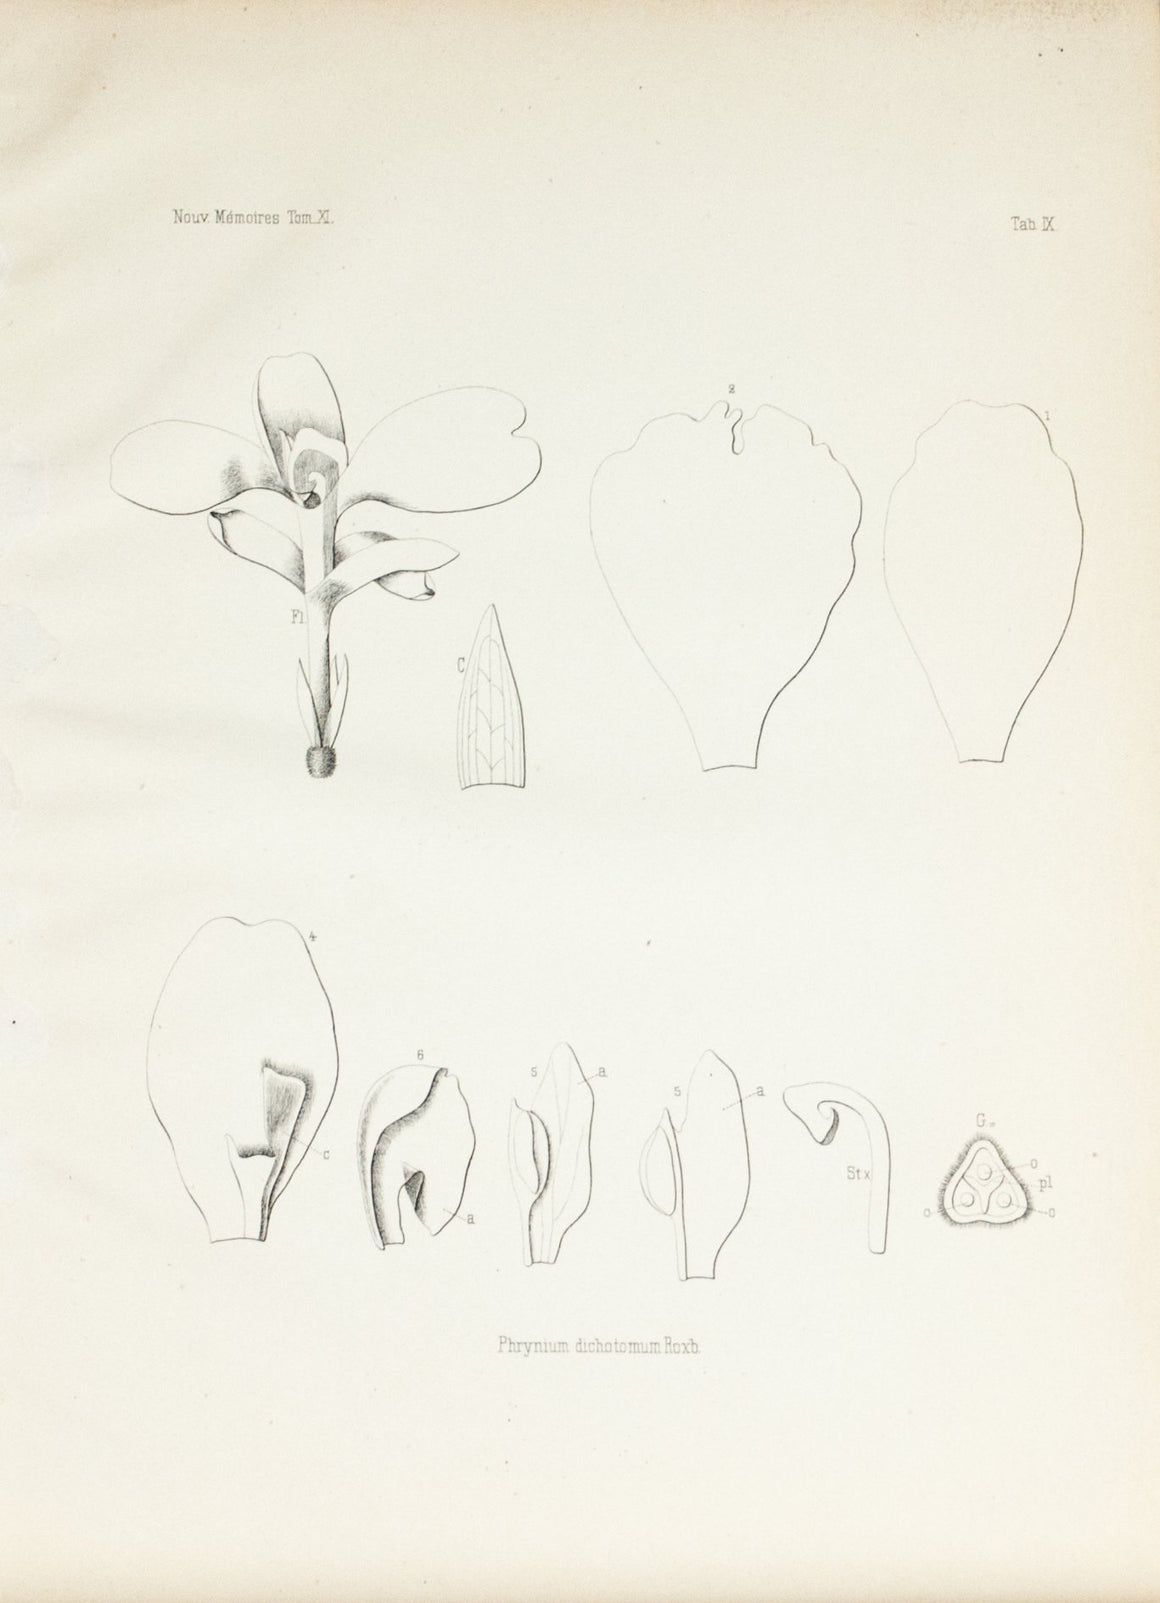 1859 Tab X - Asian Plants - Imprimerie de L Universite Imeriale 